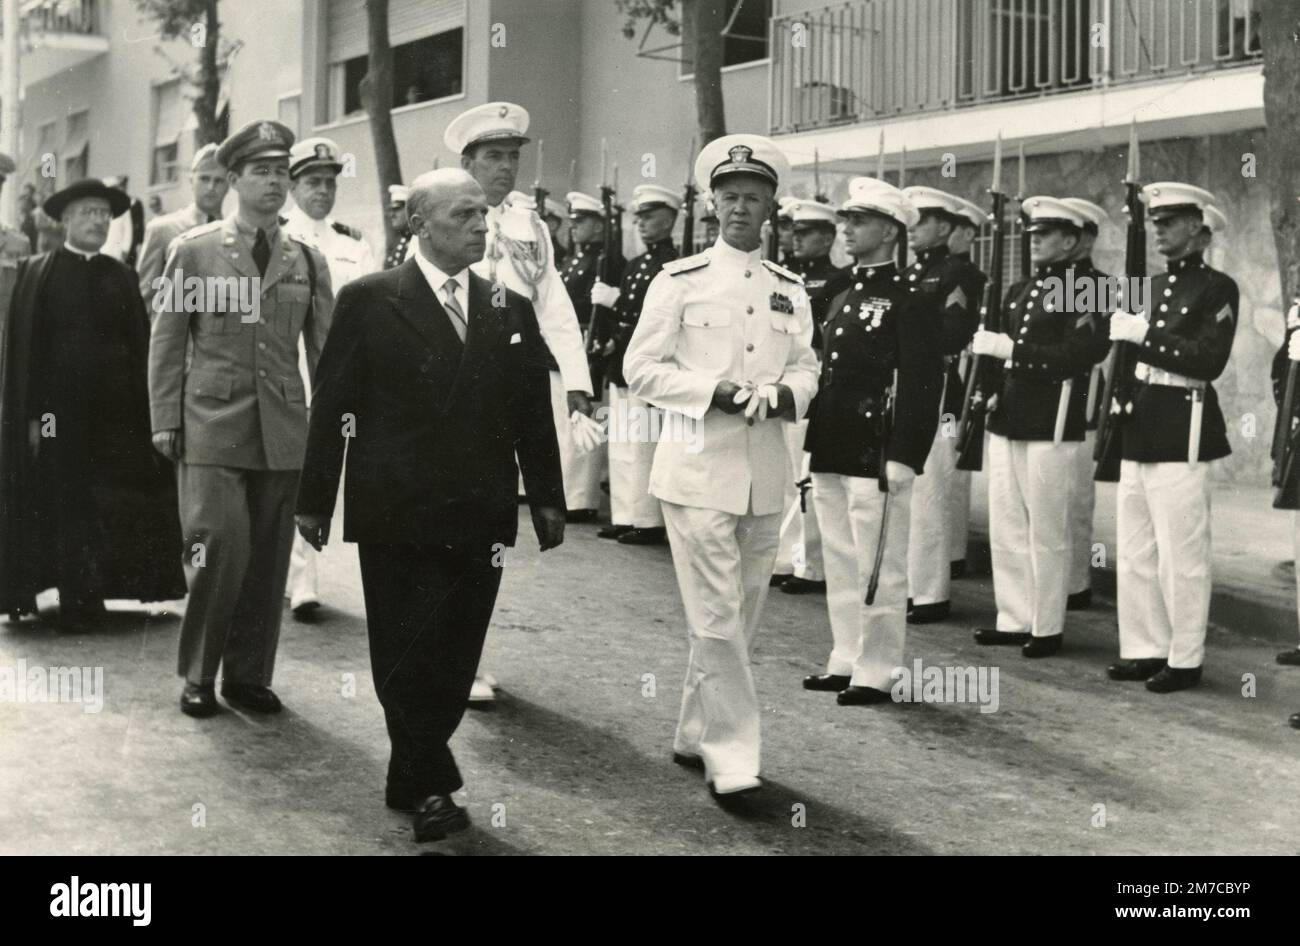 Italienische politische Persönlichkeit besucht amerikanische Militärbaracken, 1950er Stockfoto